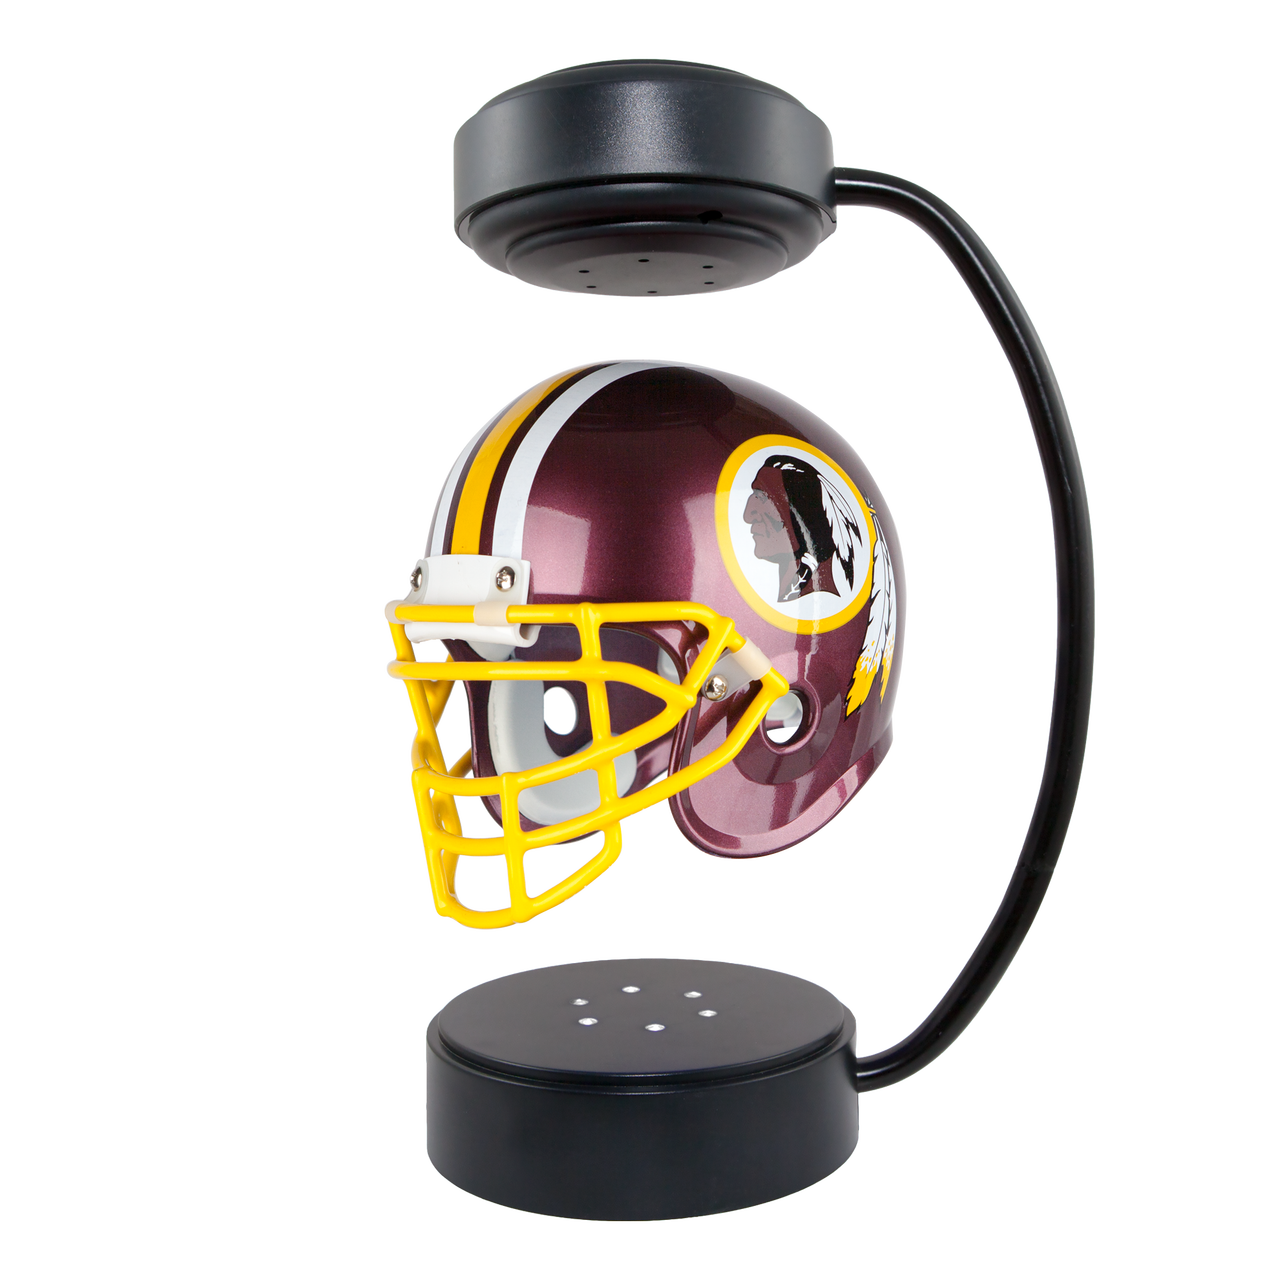 Hover Helmet - Washington Redskins